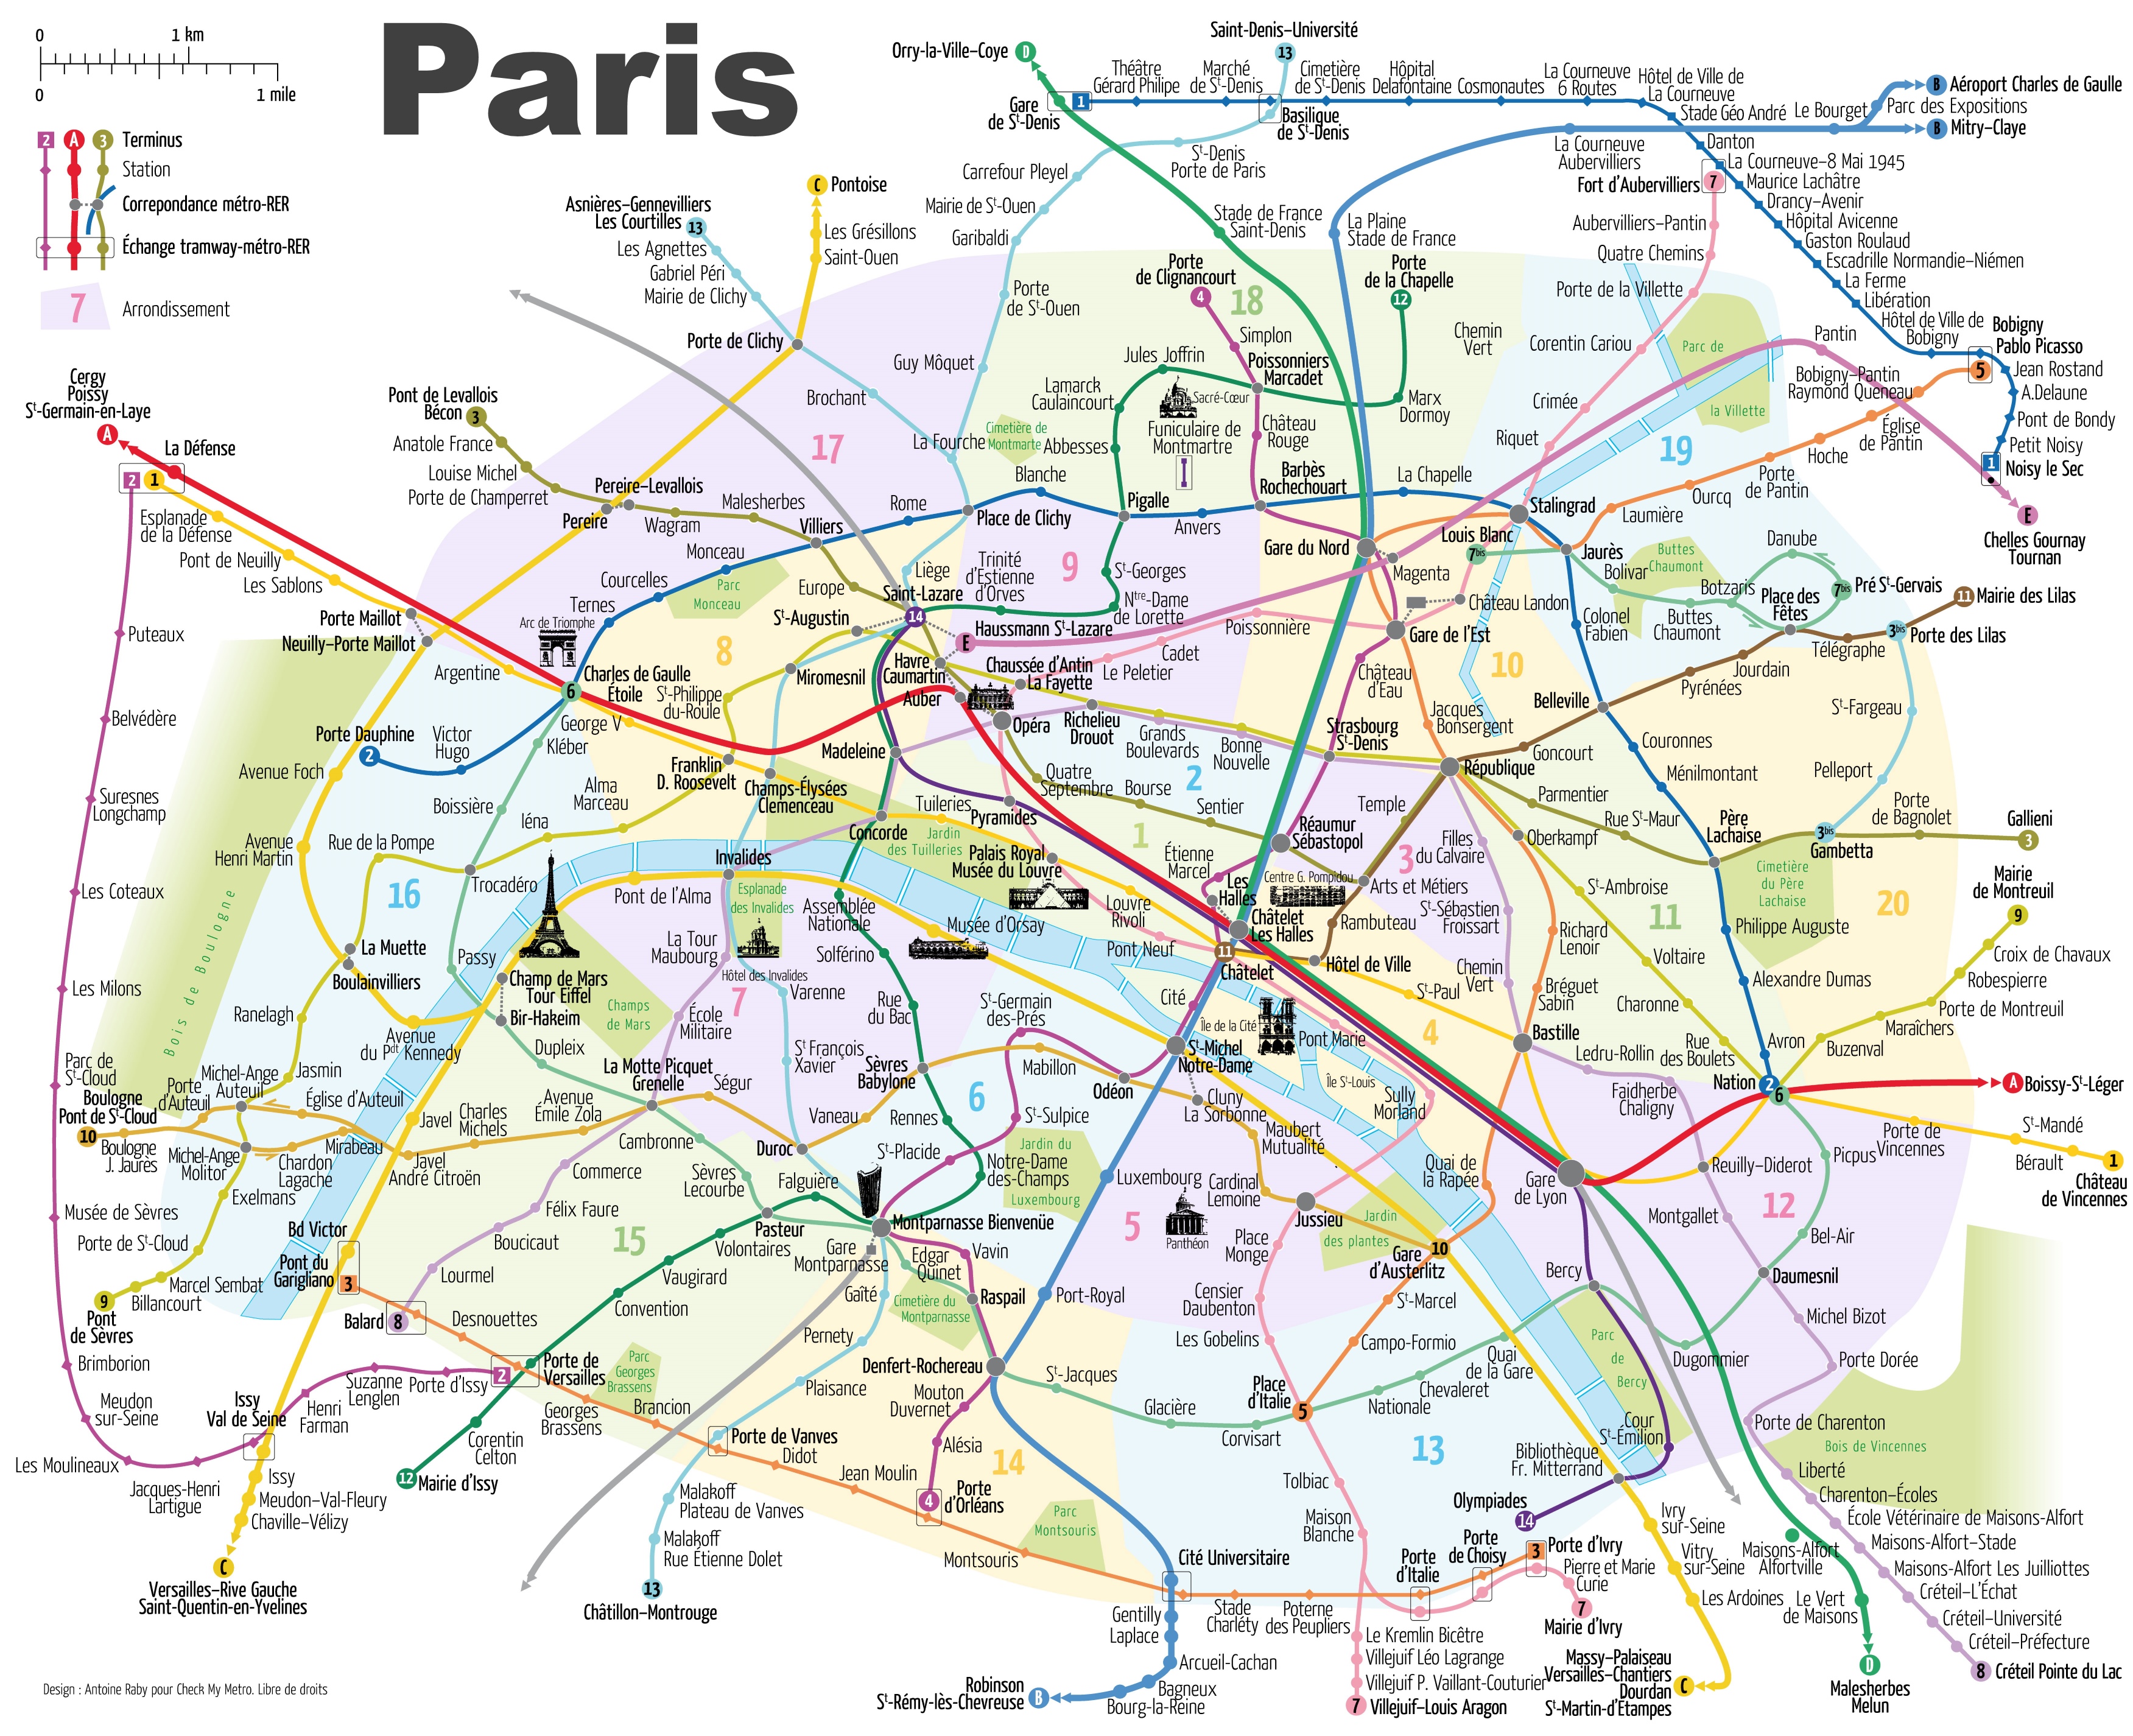 Paris Maps | France | Maps of Paris ﻿